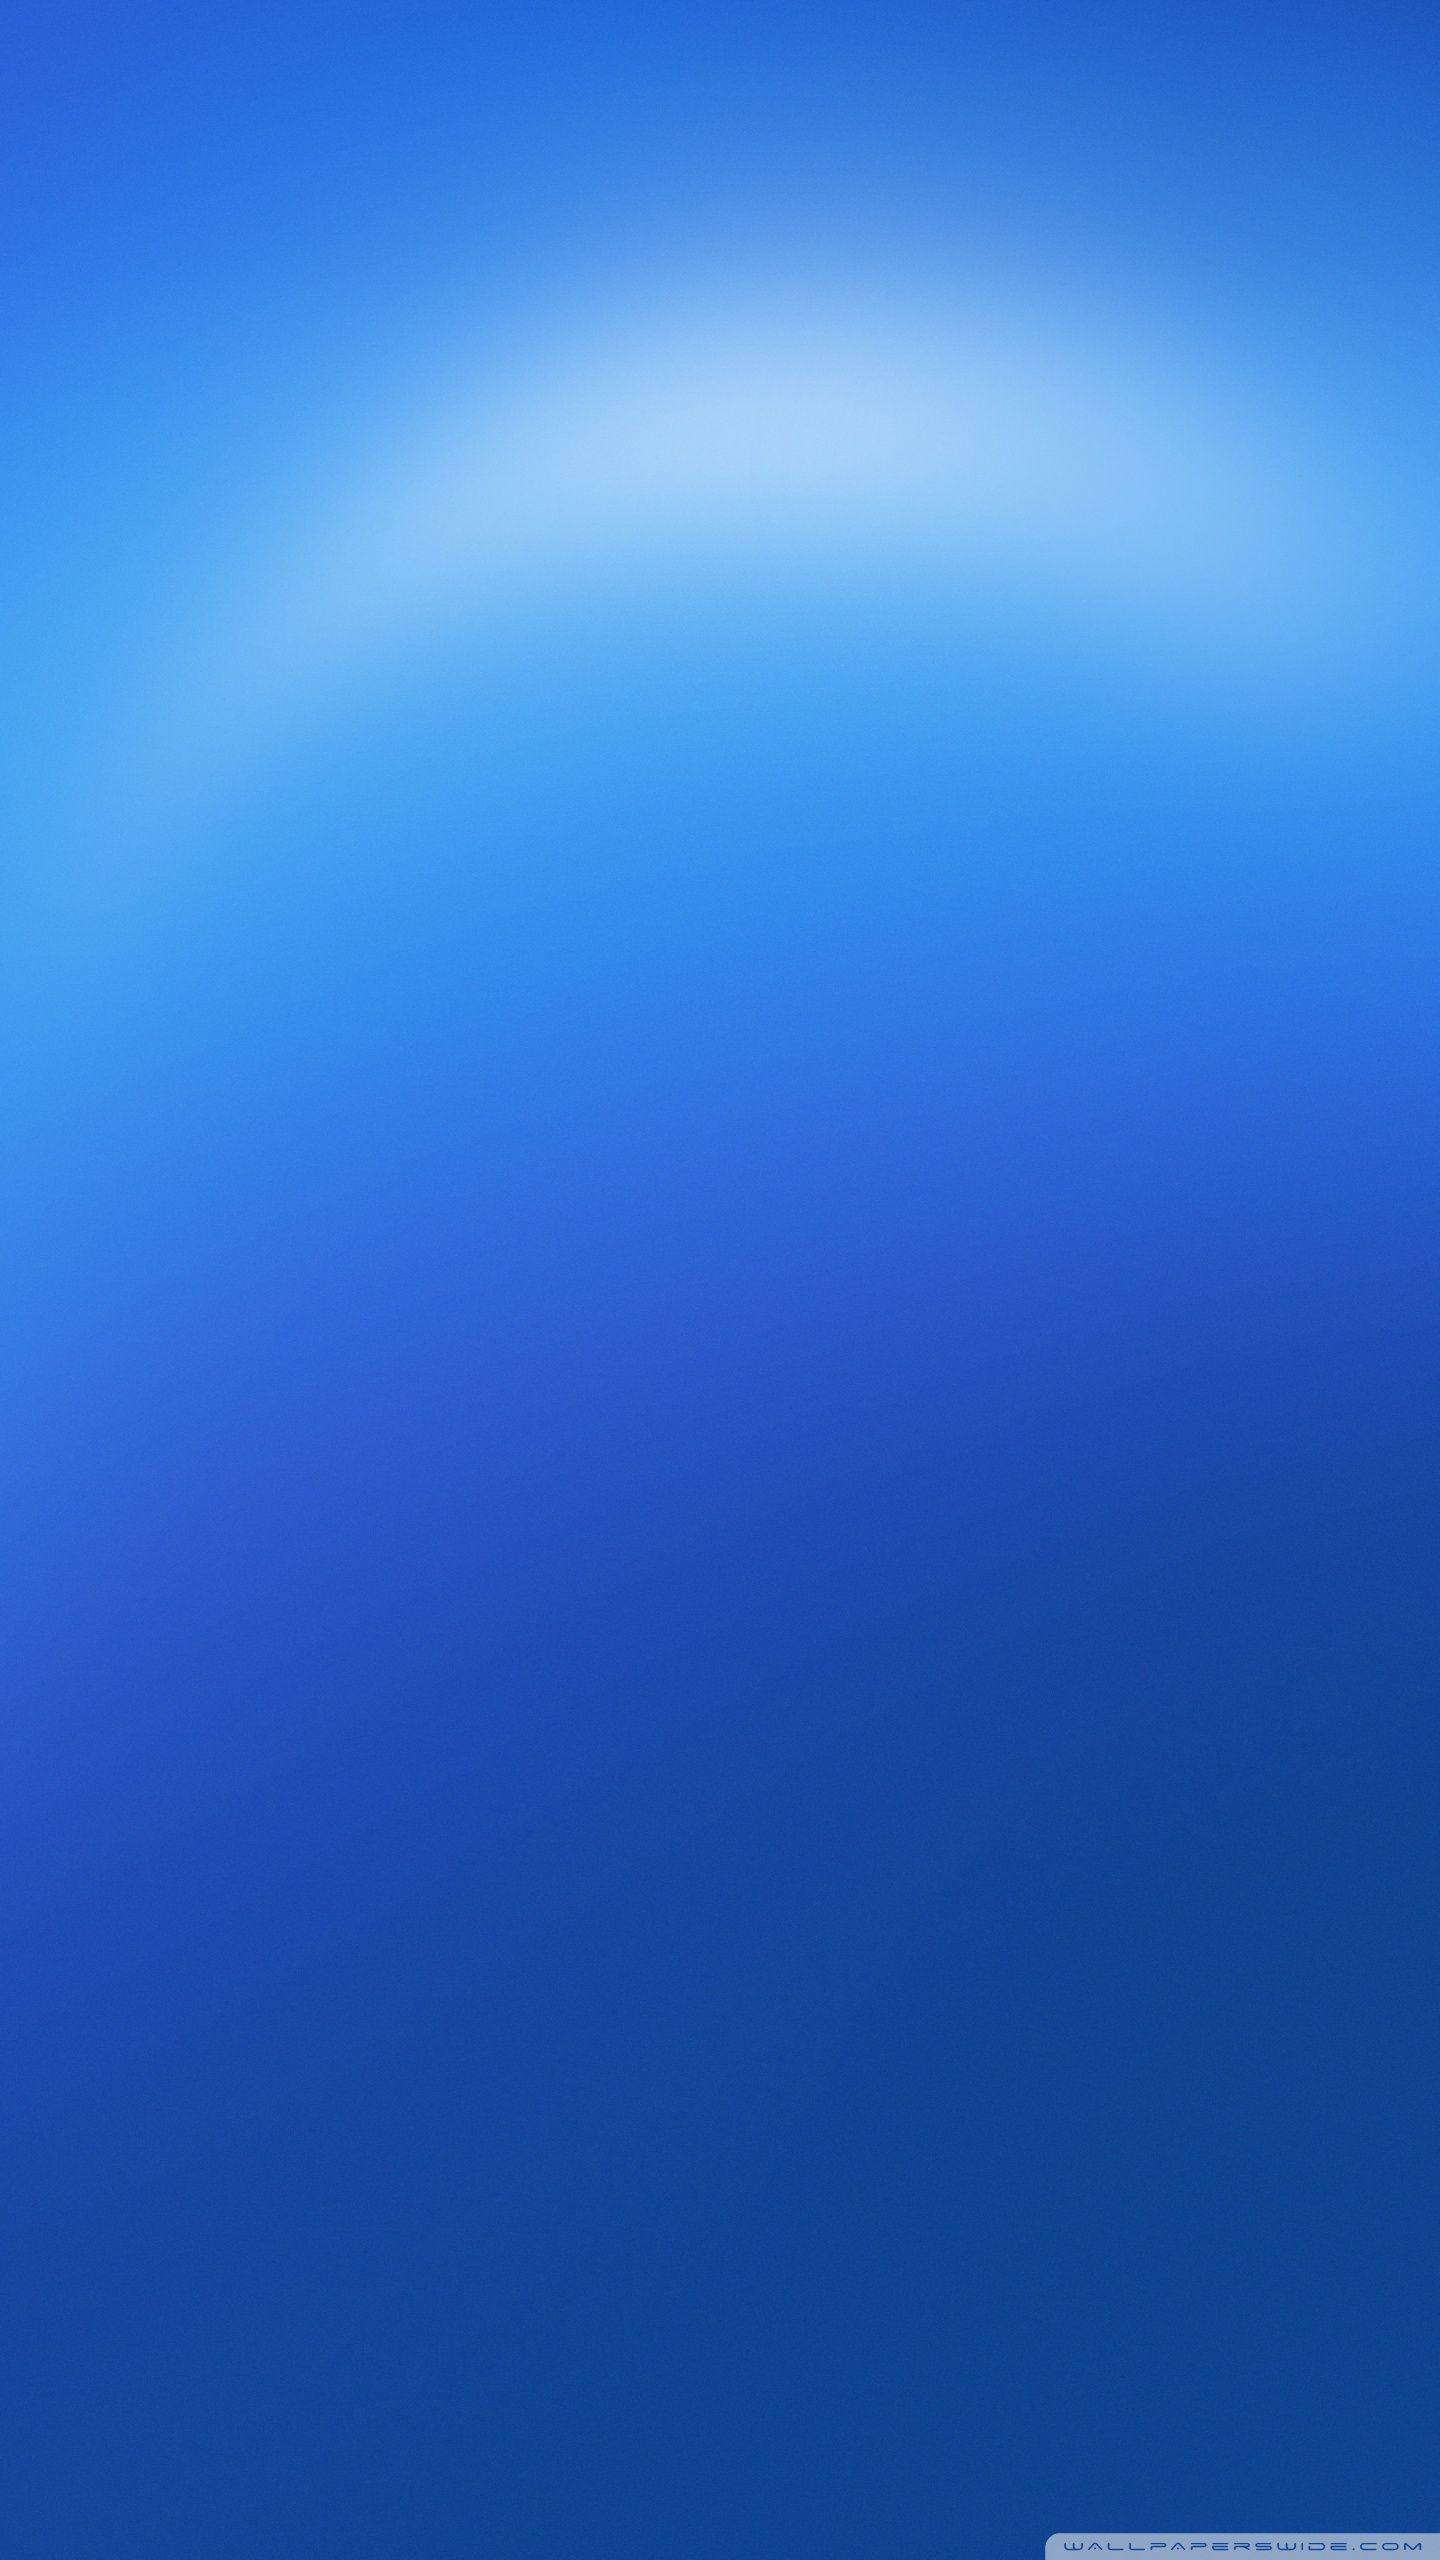 Blue Background Design Ultra HD Desktop Background Wallpaper for 4K UHD TV, Tablet